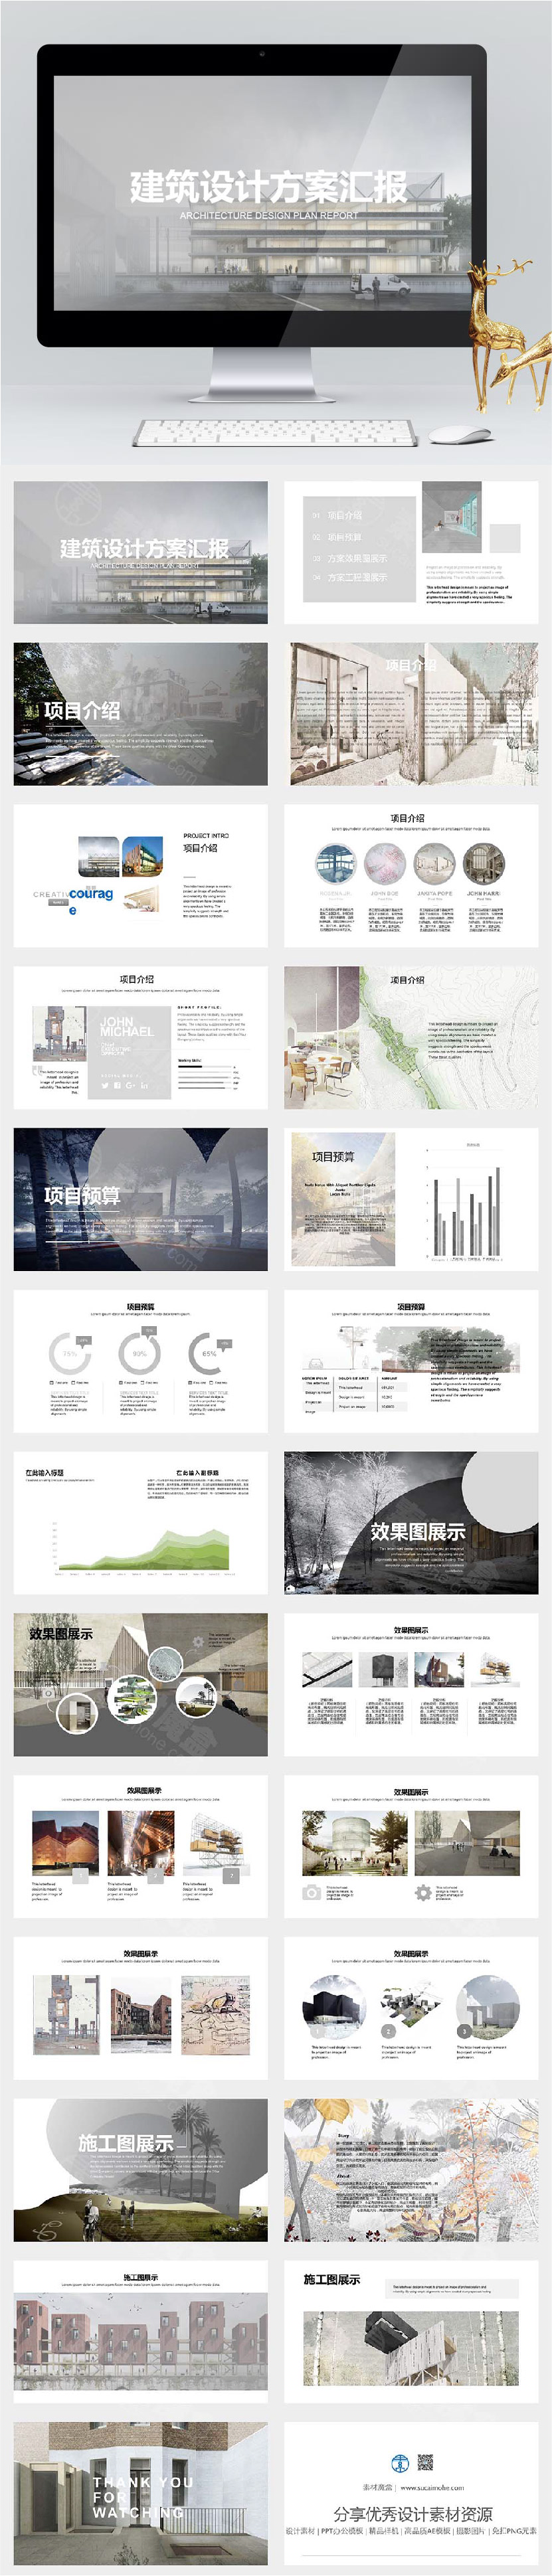 中国风水墨建筑设计方案汇报PPT模板